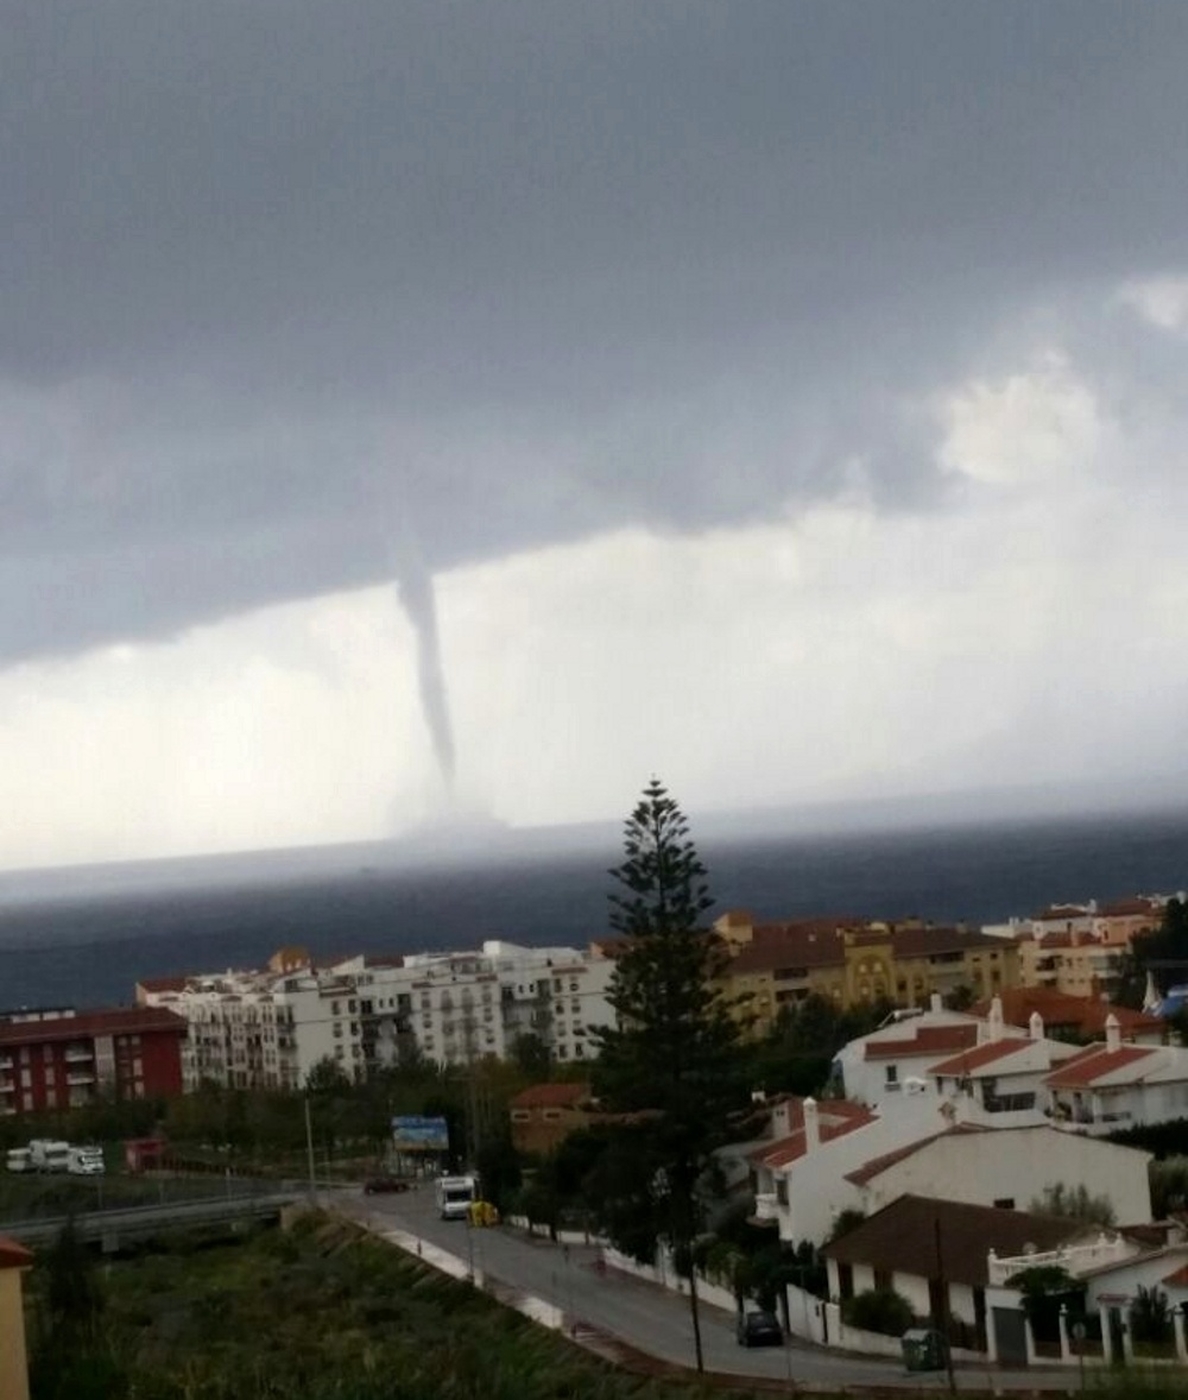 Técnicos de Aemet trabajan para calcular la intensidad del tornado que ha afectado este jueves a Torremolinos (Málaga)